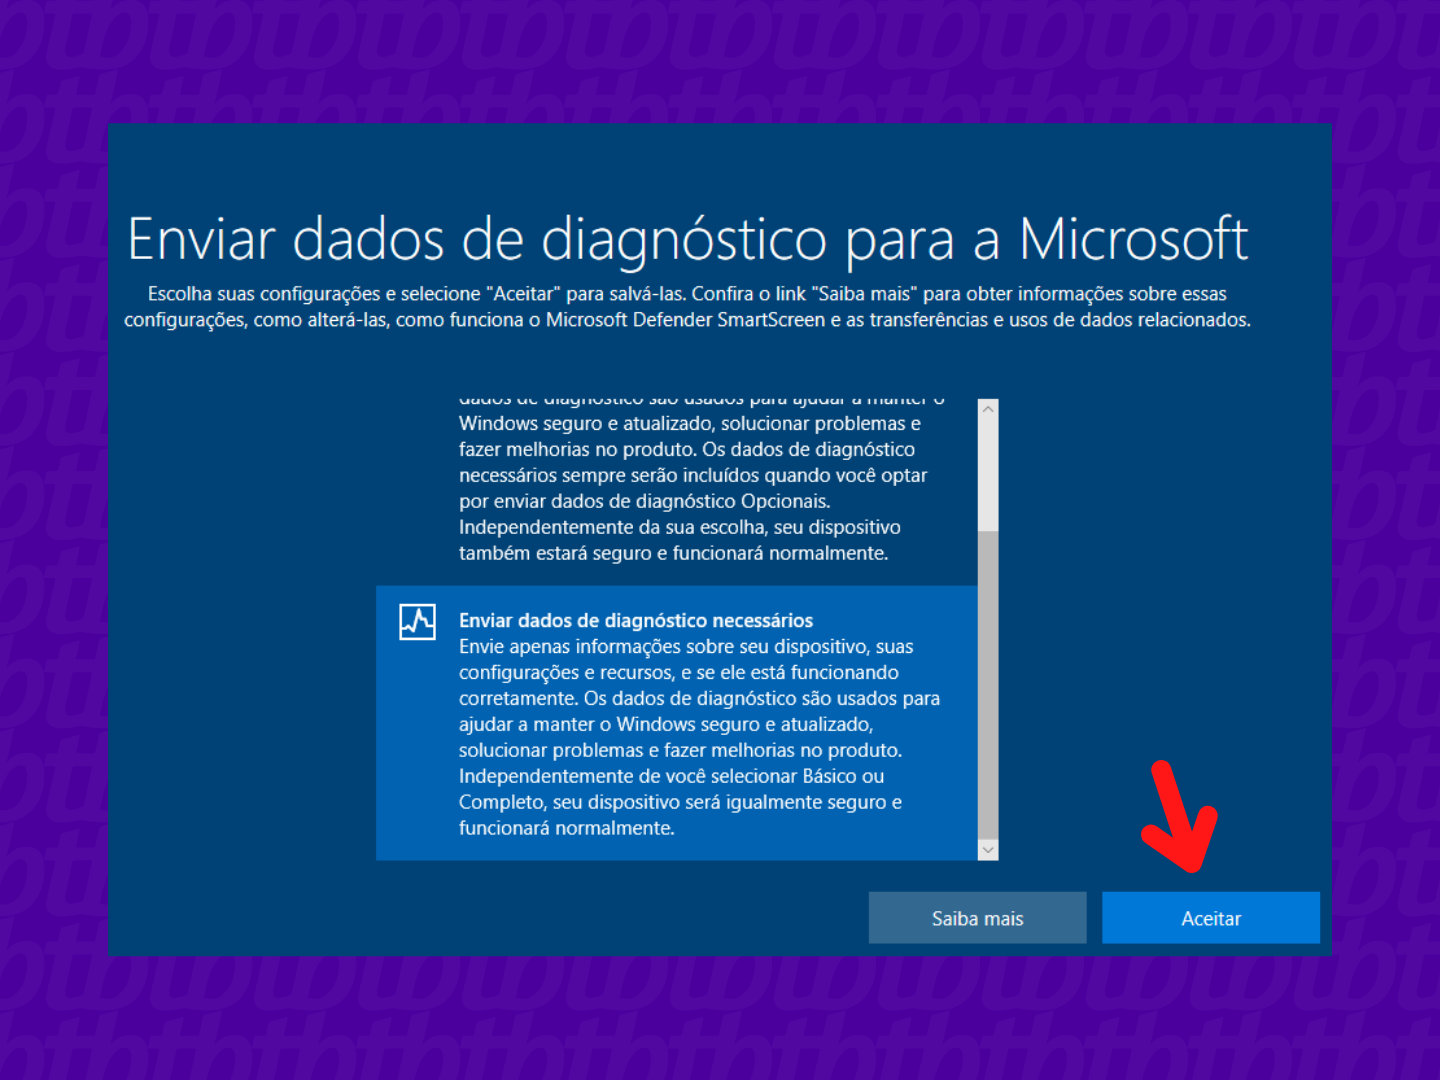 Tela para enviar ou não dados de diagnóstico para a Microsoft